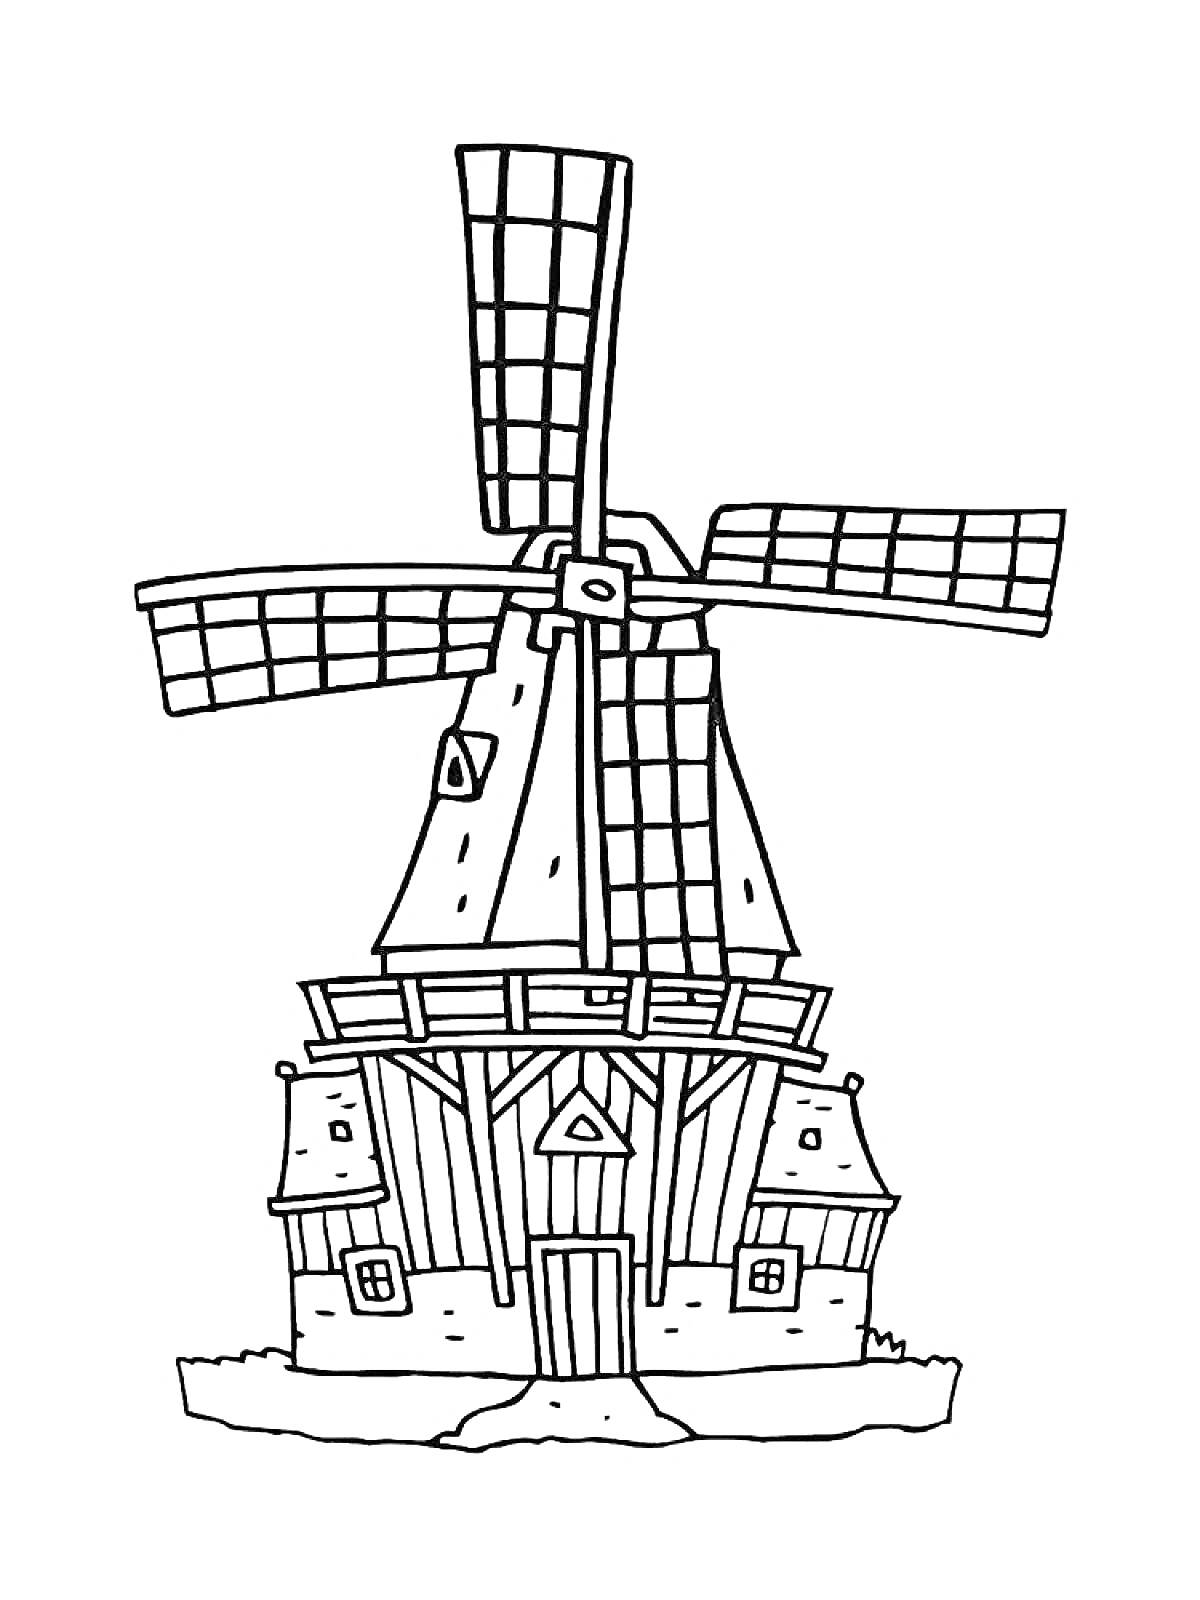 Раскраска Мельница с большой крышей и четырьмя лопастями, домик снизу с двумя окнами и дверью, небольшой участок травы